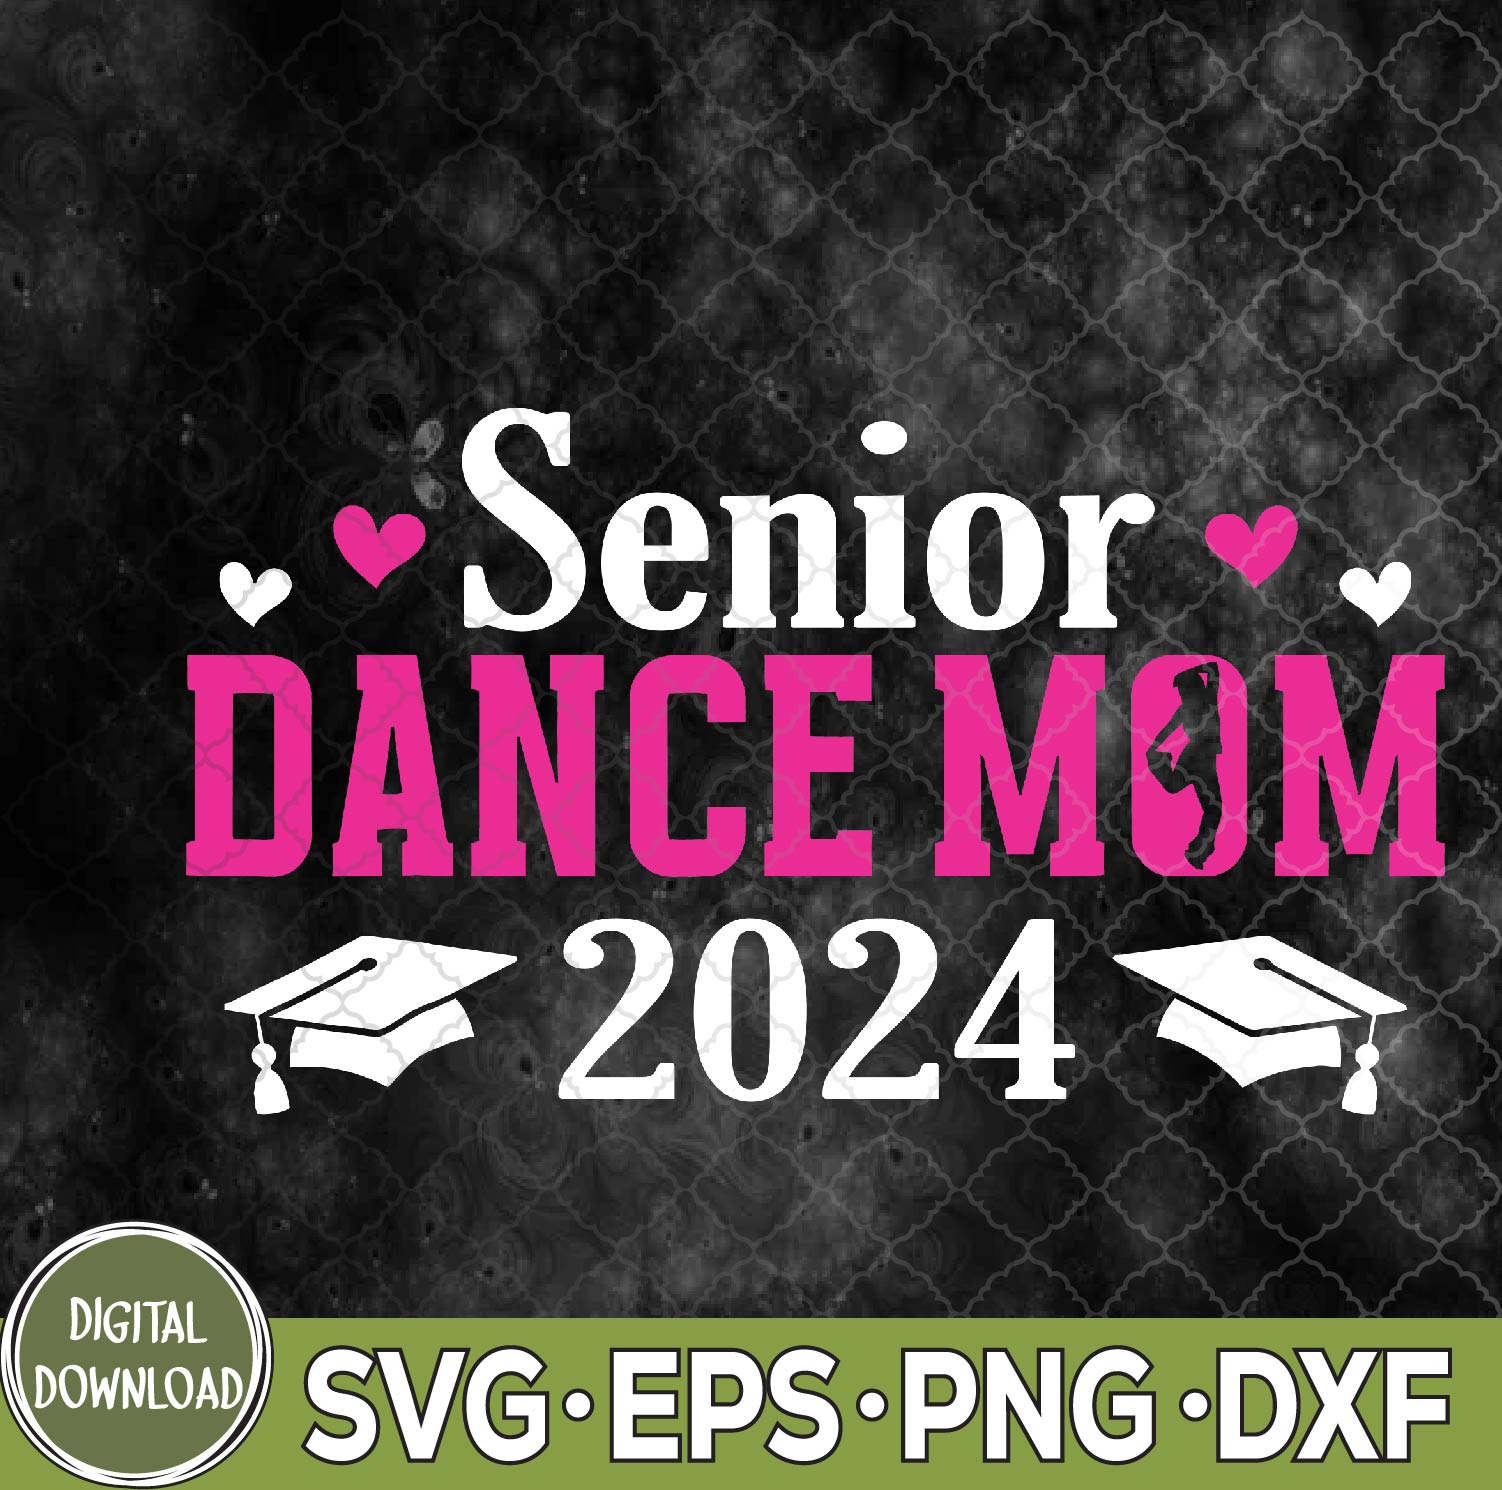 WTMNEW9file 09 220 Dance Senior Mom 2024 Dancing Senior Mama 2024 Svg, Png, Digital Download